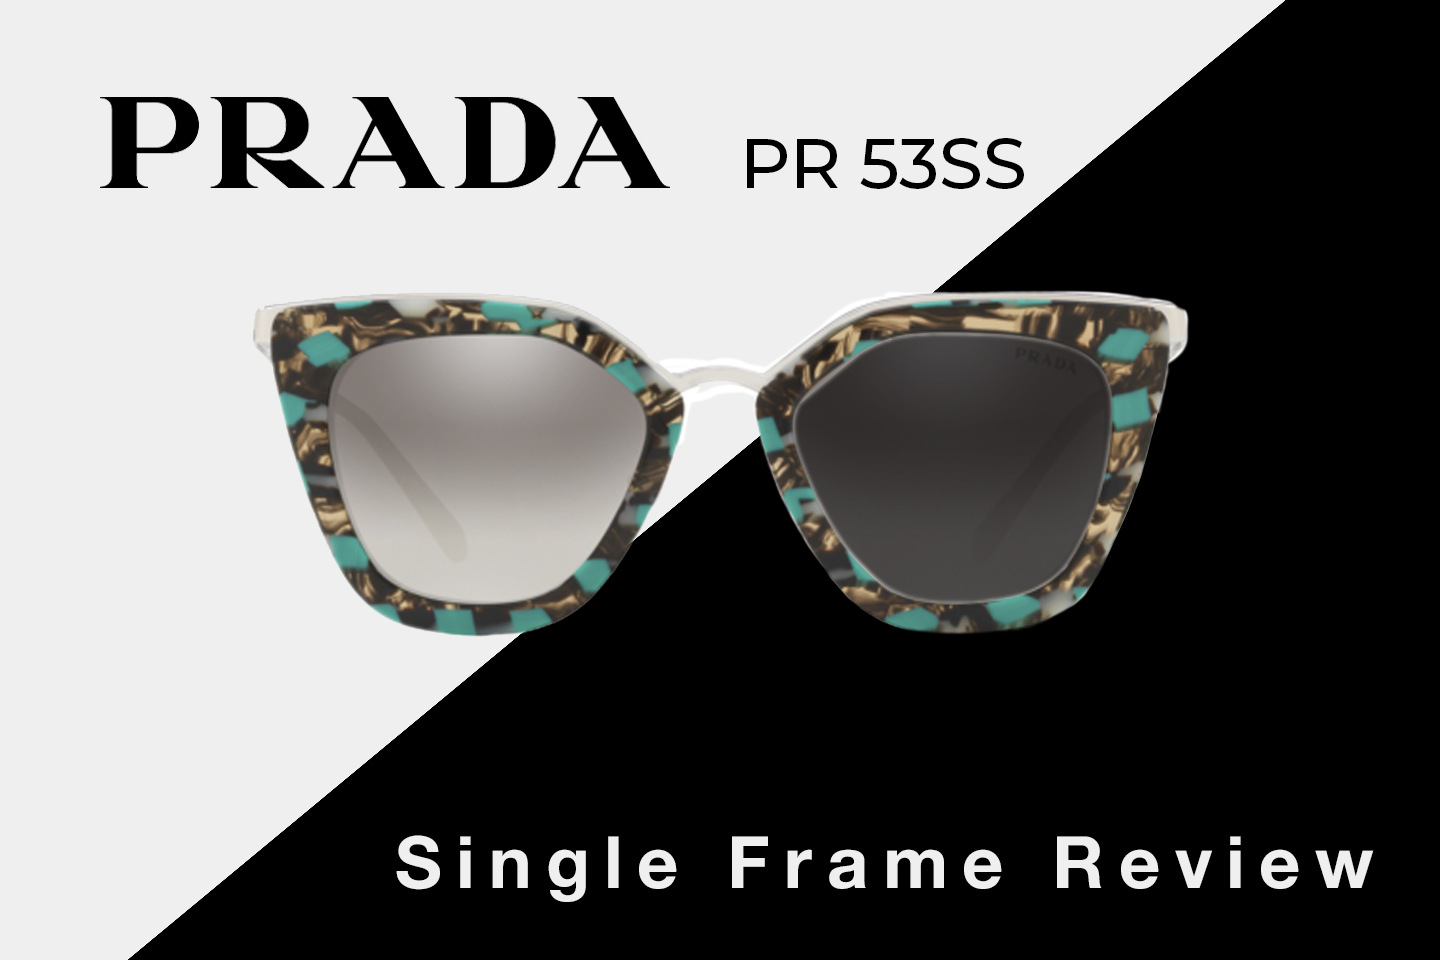 Prada PR 53SS Sunglasses Review | Prada Women's Cat Eye Sunglasses | SportRx